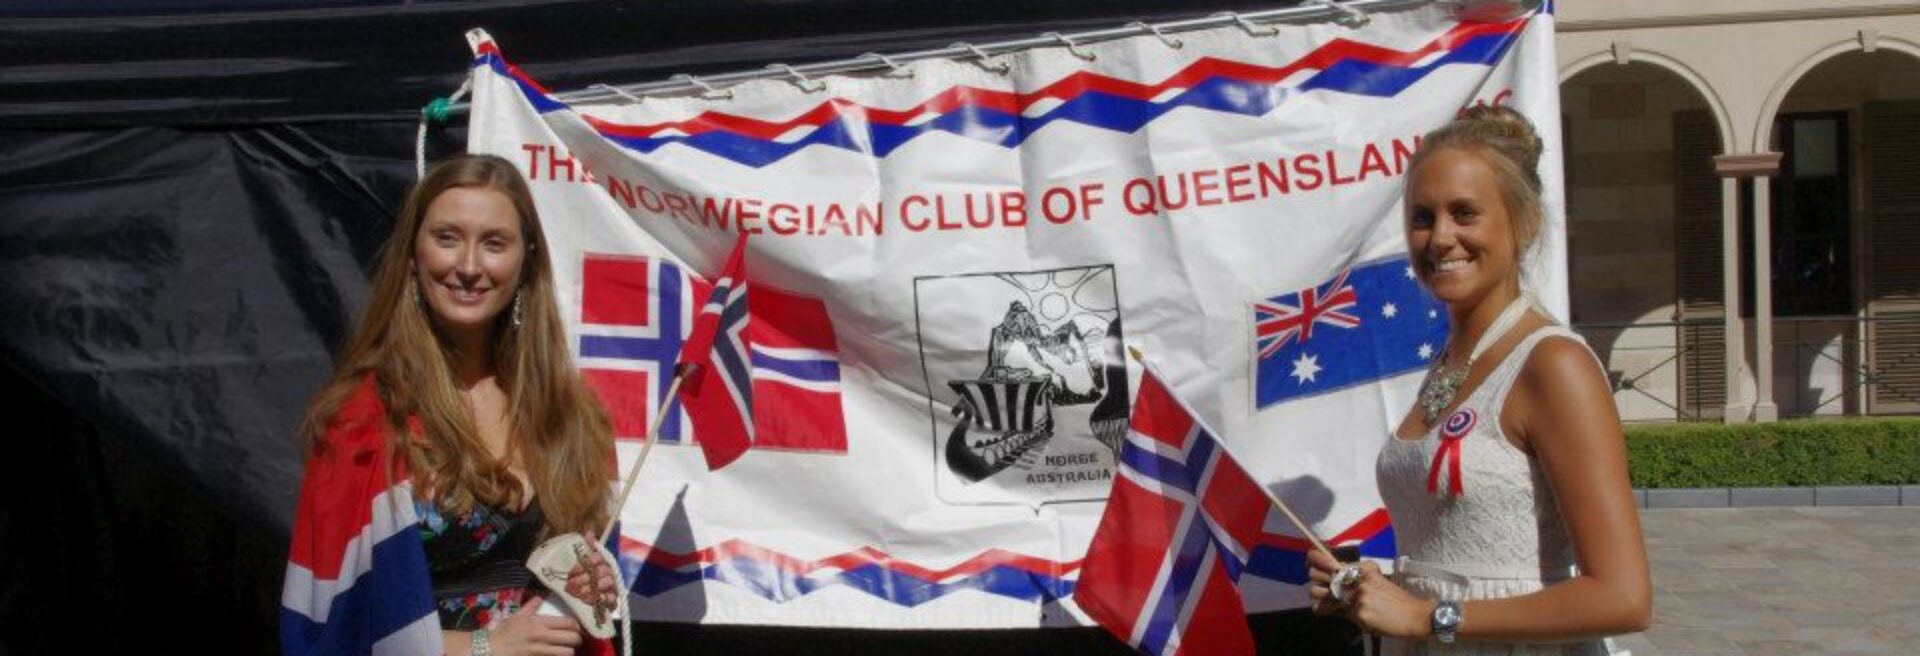 The Norwegian Club of Queensland Inc.